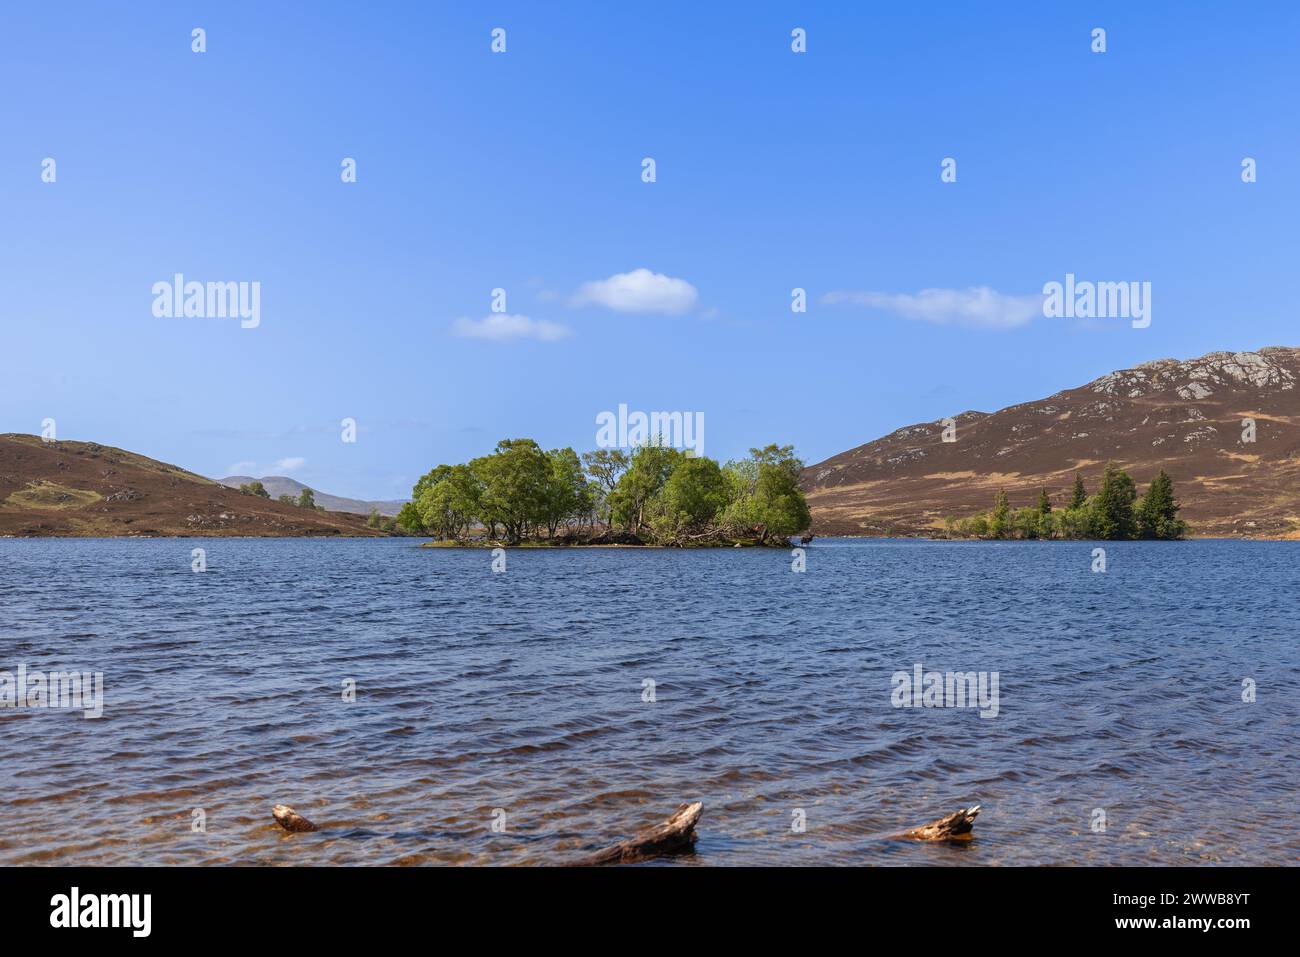 Una escena cautivadora en un lago escocés, con una pequeña isla rica en árboles en el centro. Mientras que los dos ciervos rojos permanecen ocultos Foto de stock